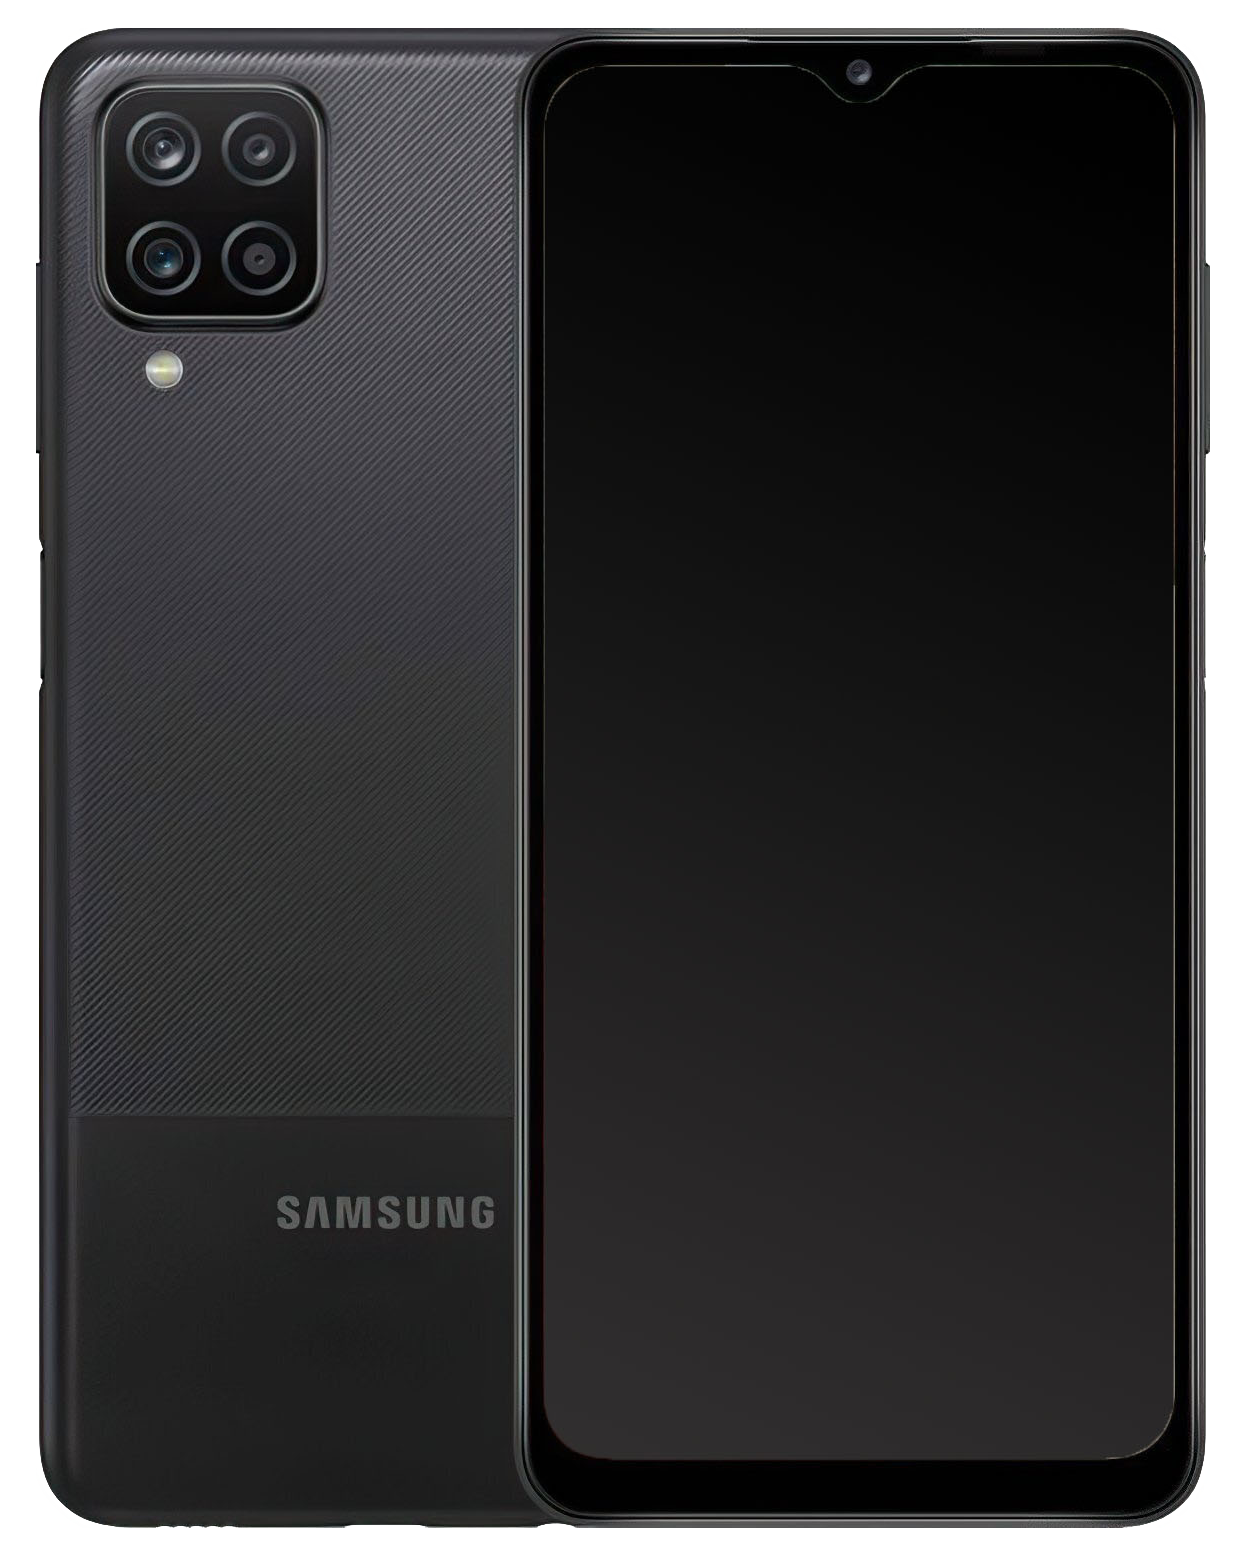 Samsung Galaxy A12 Dual-SIM schwarz - Onhe Vertrag